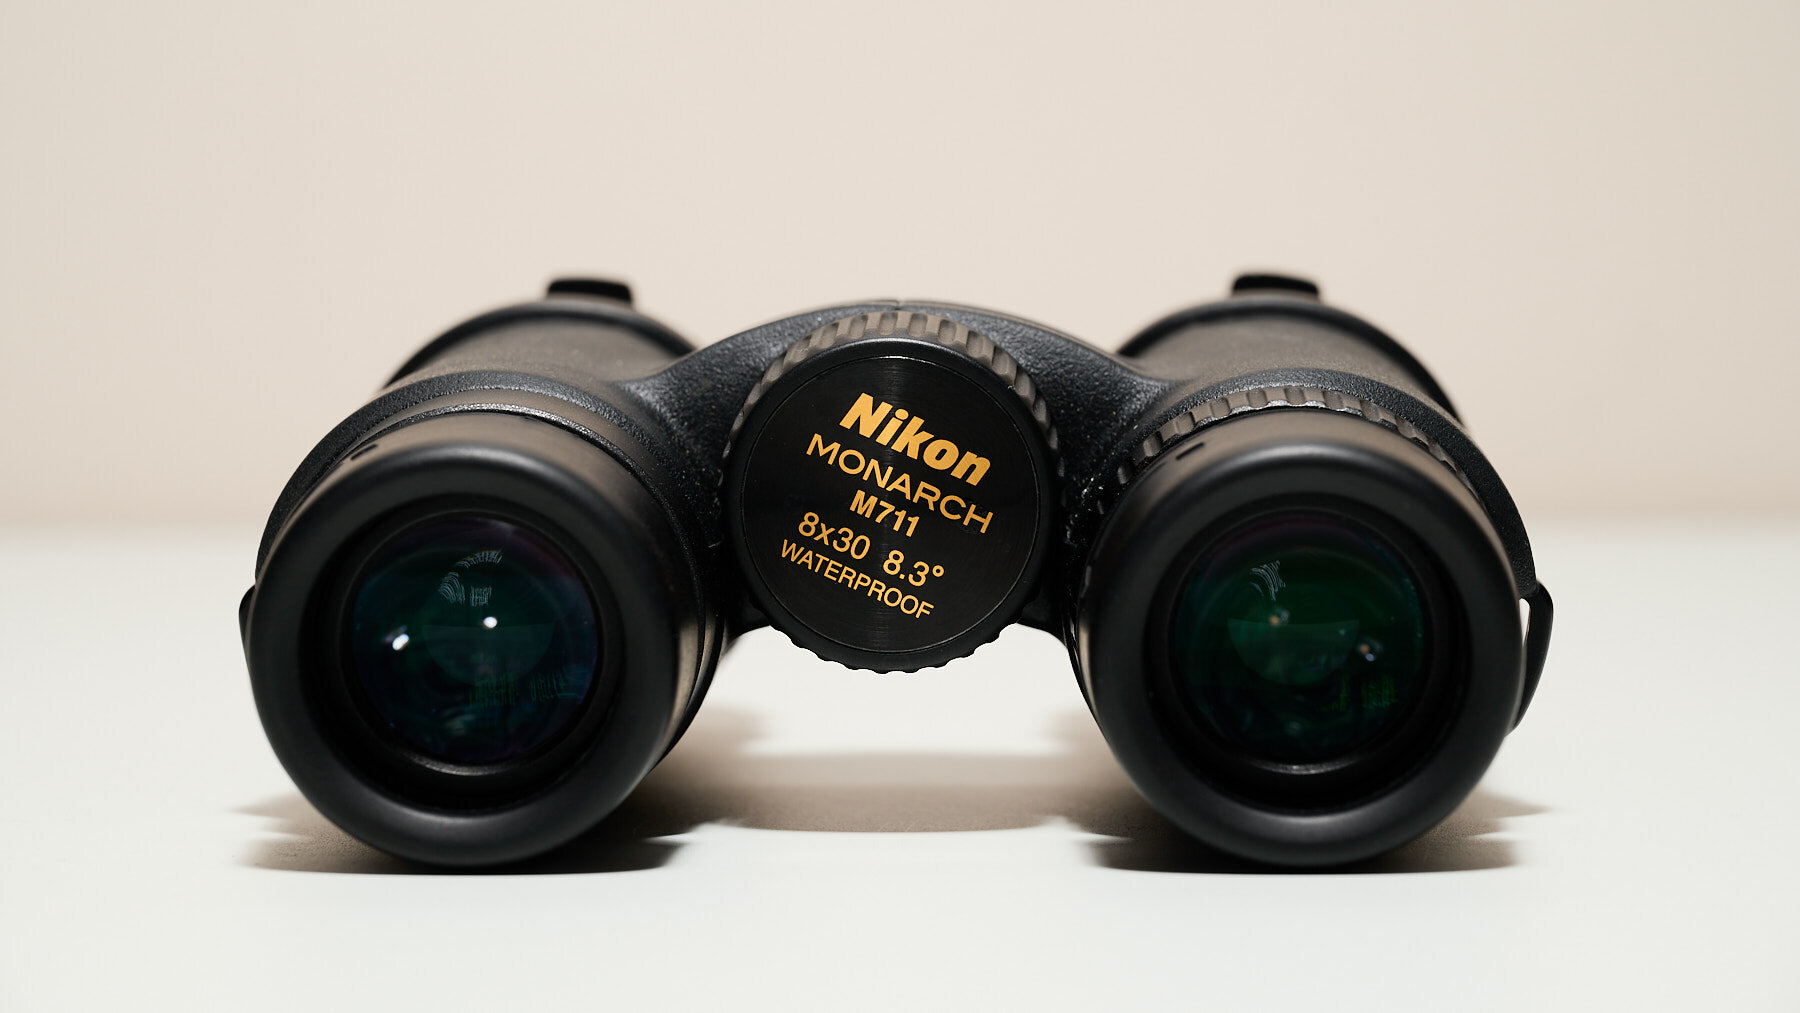 More information about "Nikon Monarch 7 8x30"